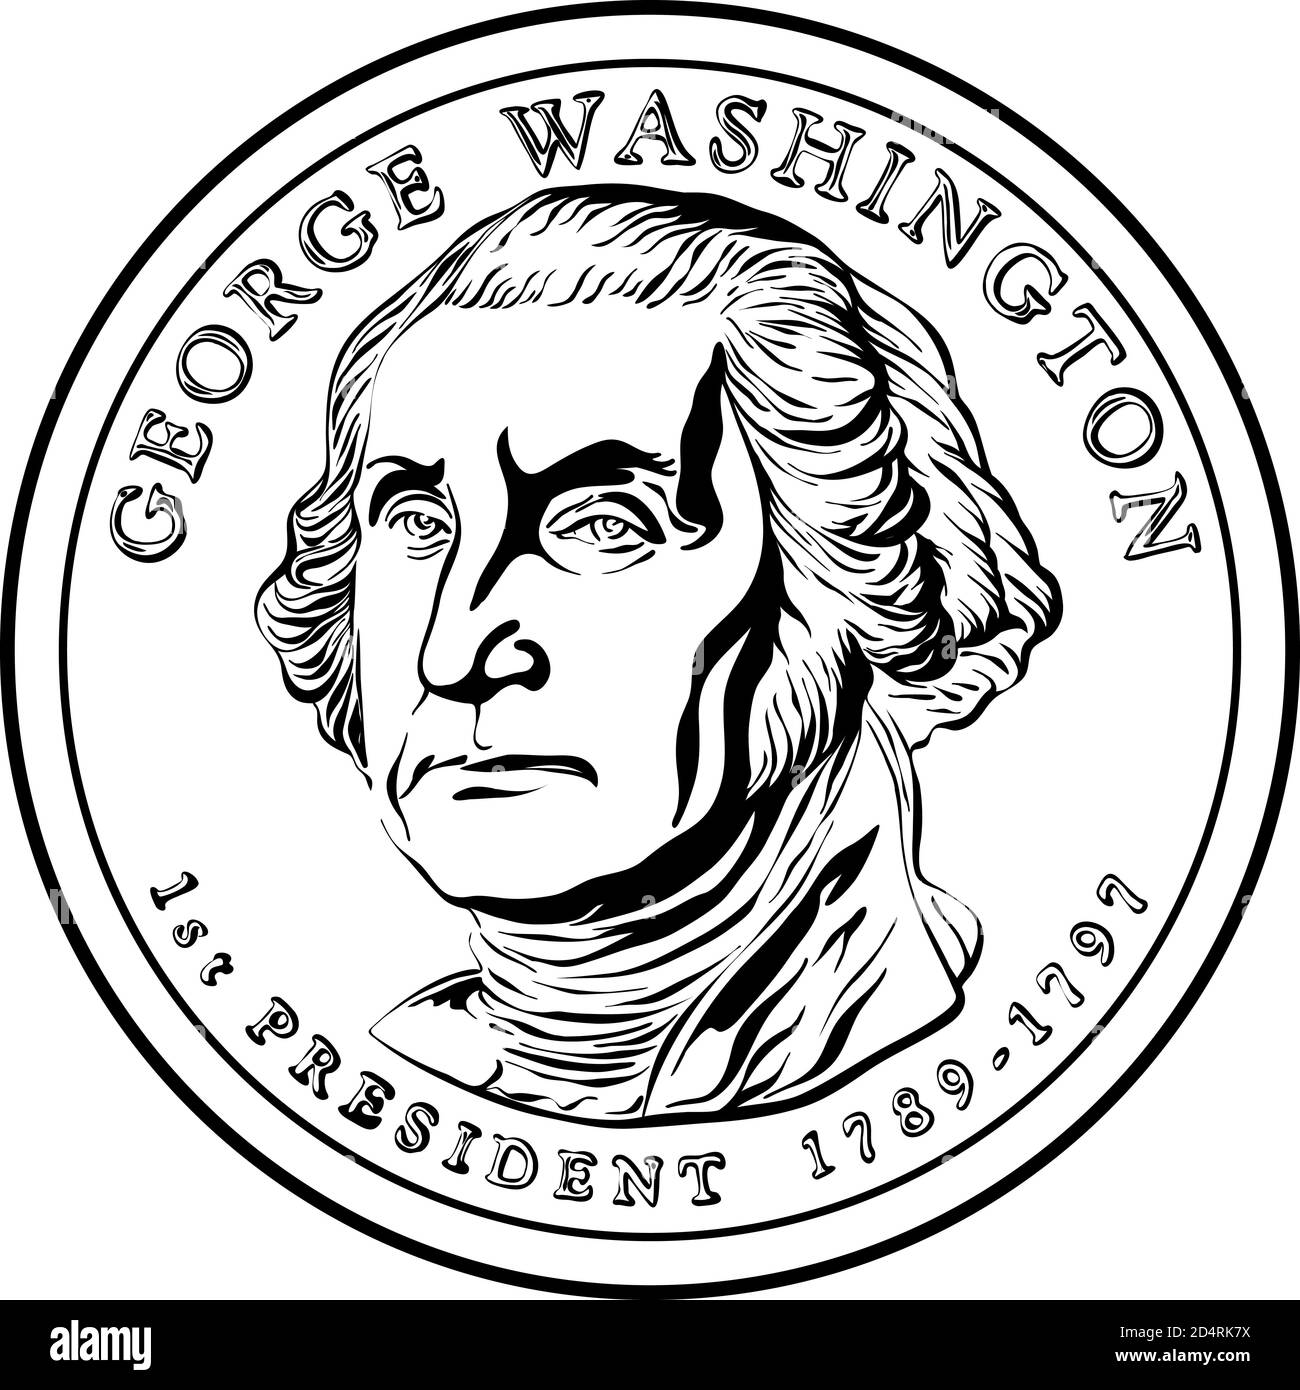 Moneta americana moneta presidenziale del dollaro, con il primo presidente degli Stati Uniti Washington su Obverse. Immagine in bianco e nero Illustrazione Vettoriale